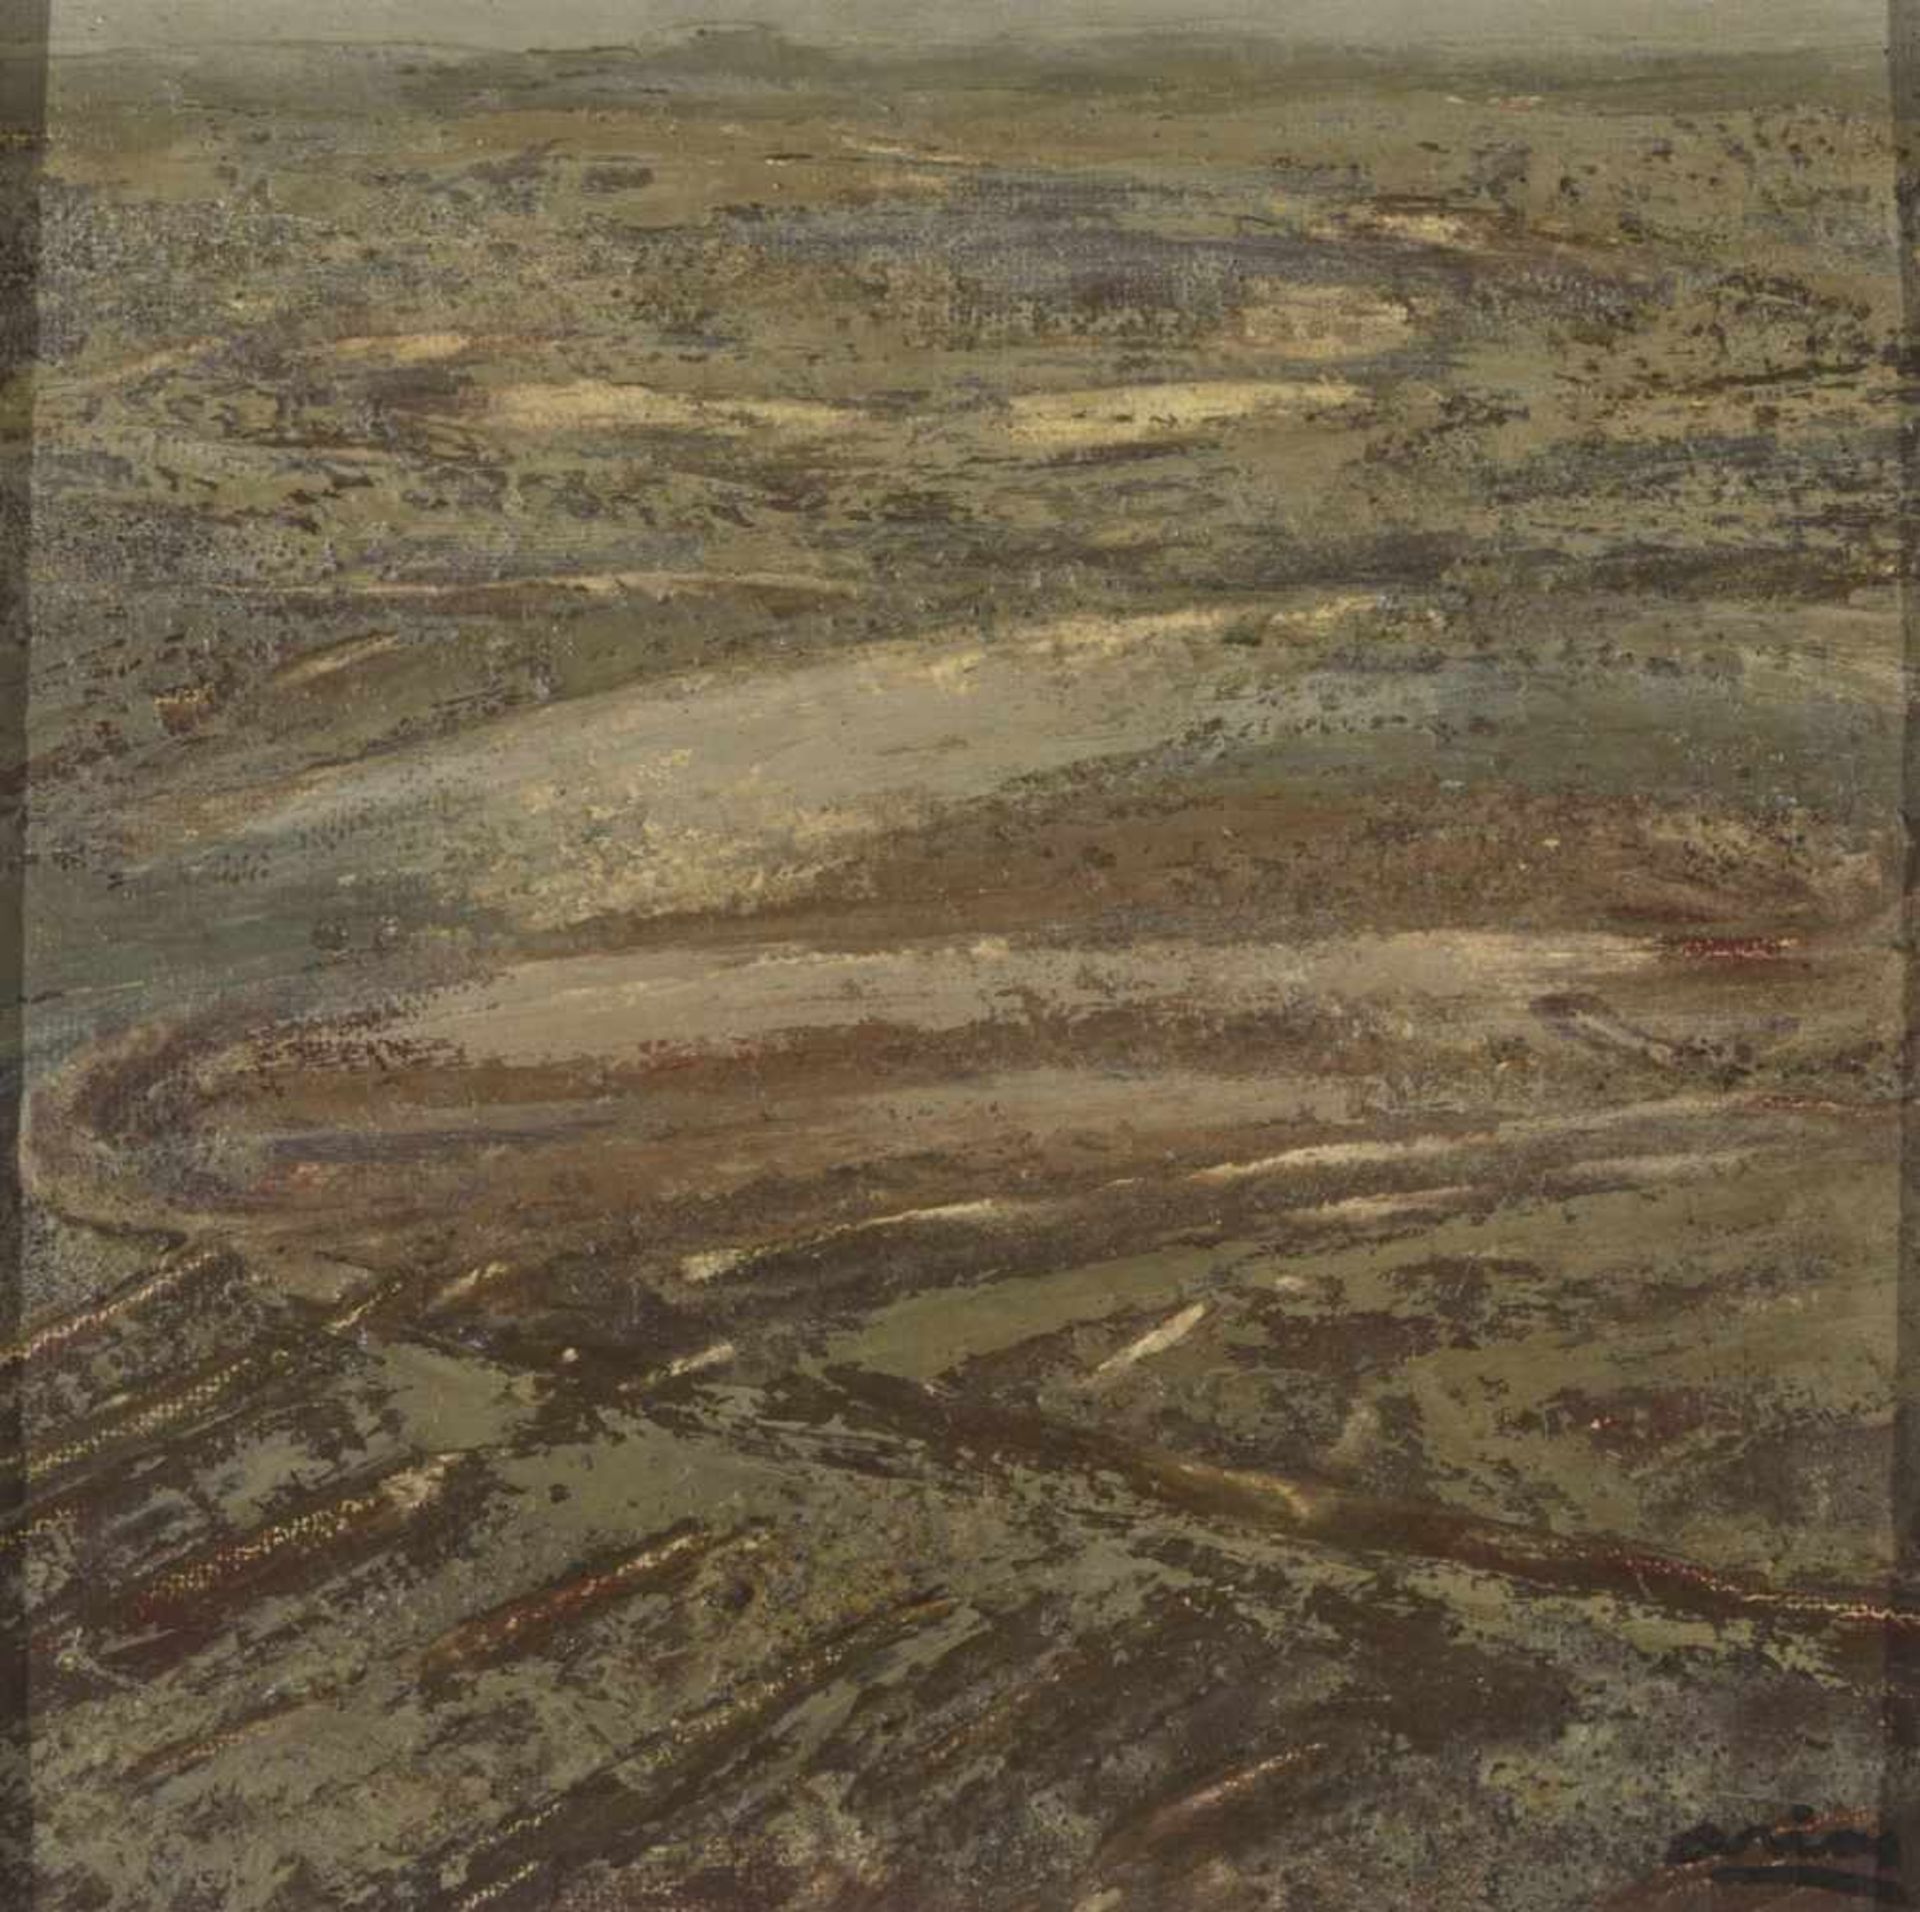 FRANCISCO ARIAS (Madrid, 1911-1977) Paisaje Óleo sobre táblex de 35 x 35 cm. Firmado.- - -21.00 %